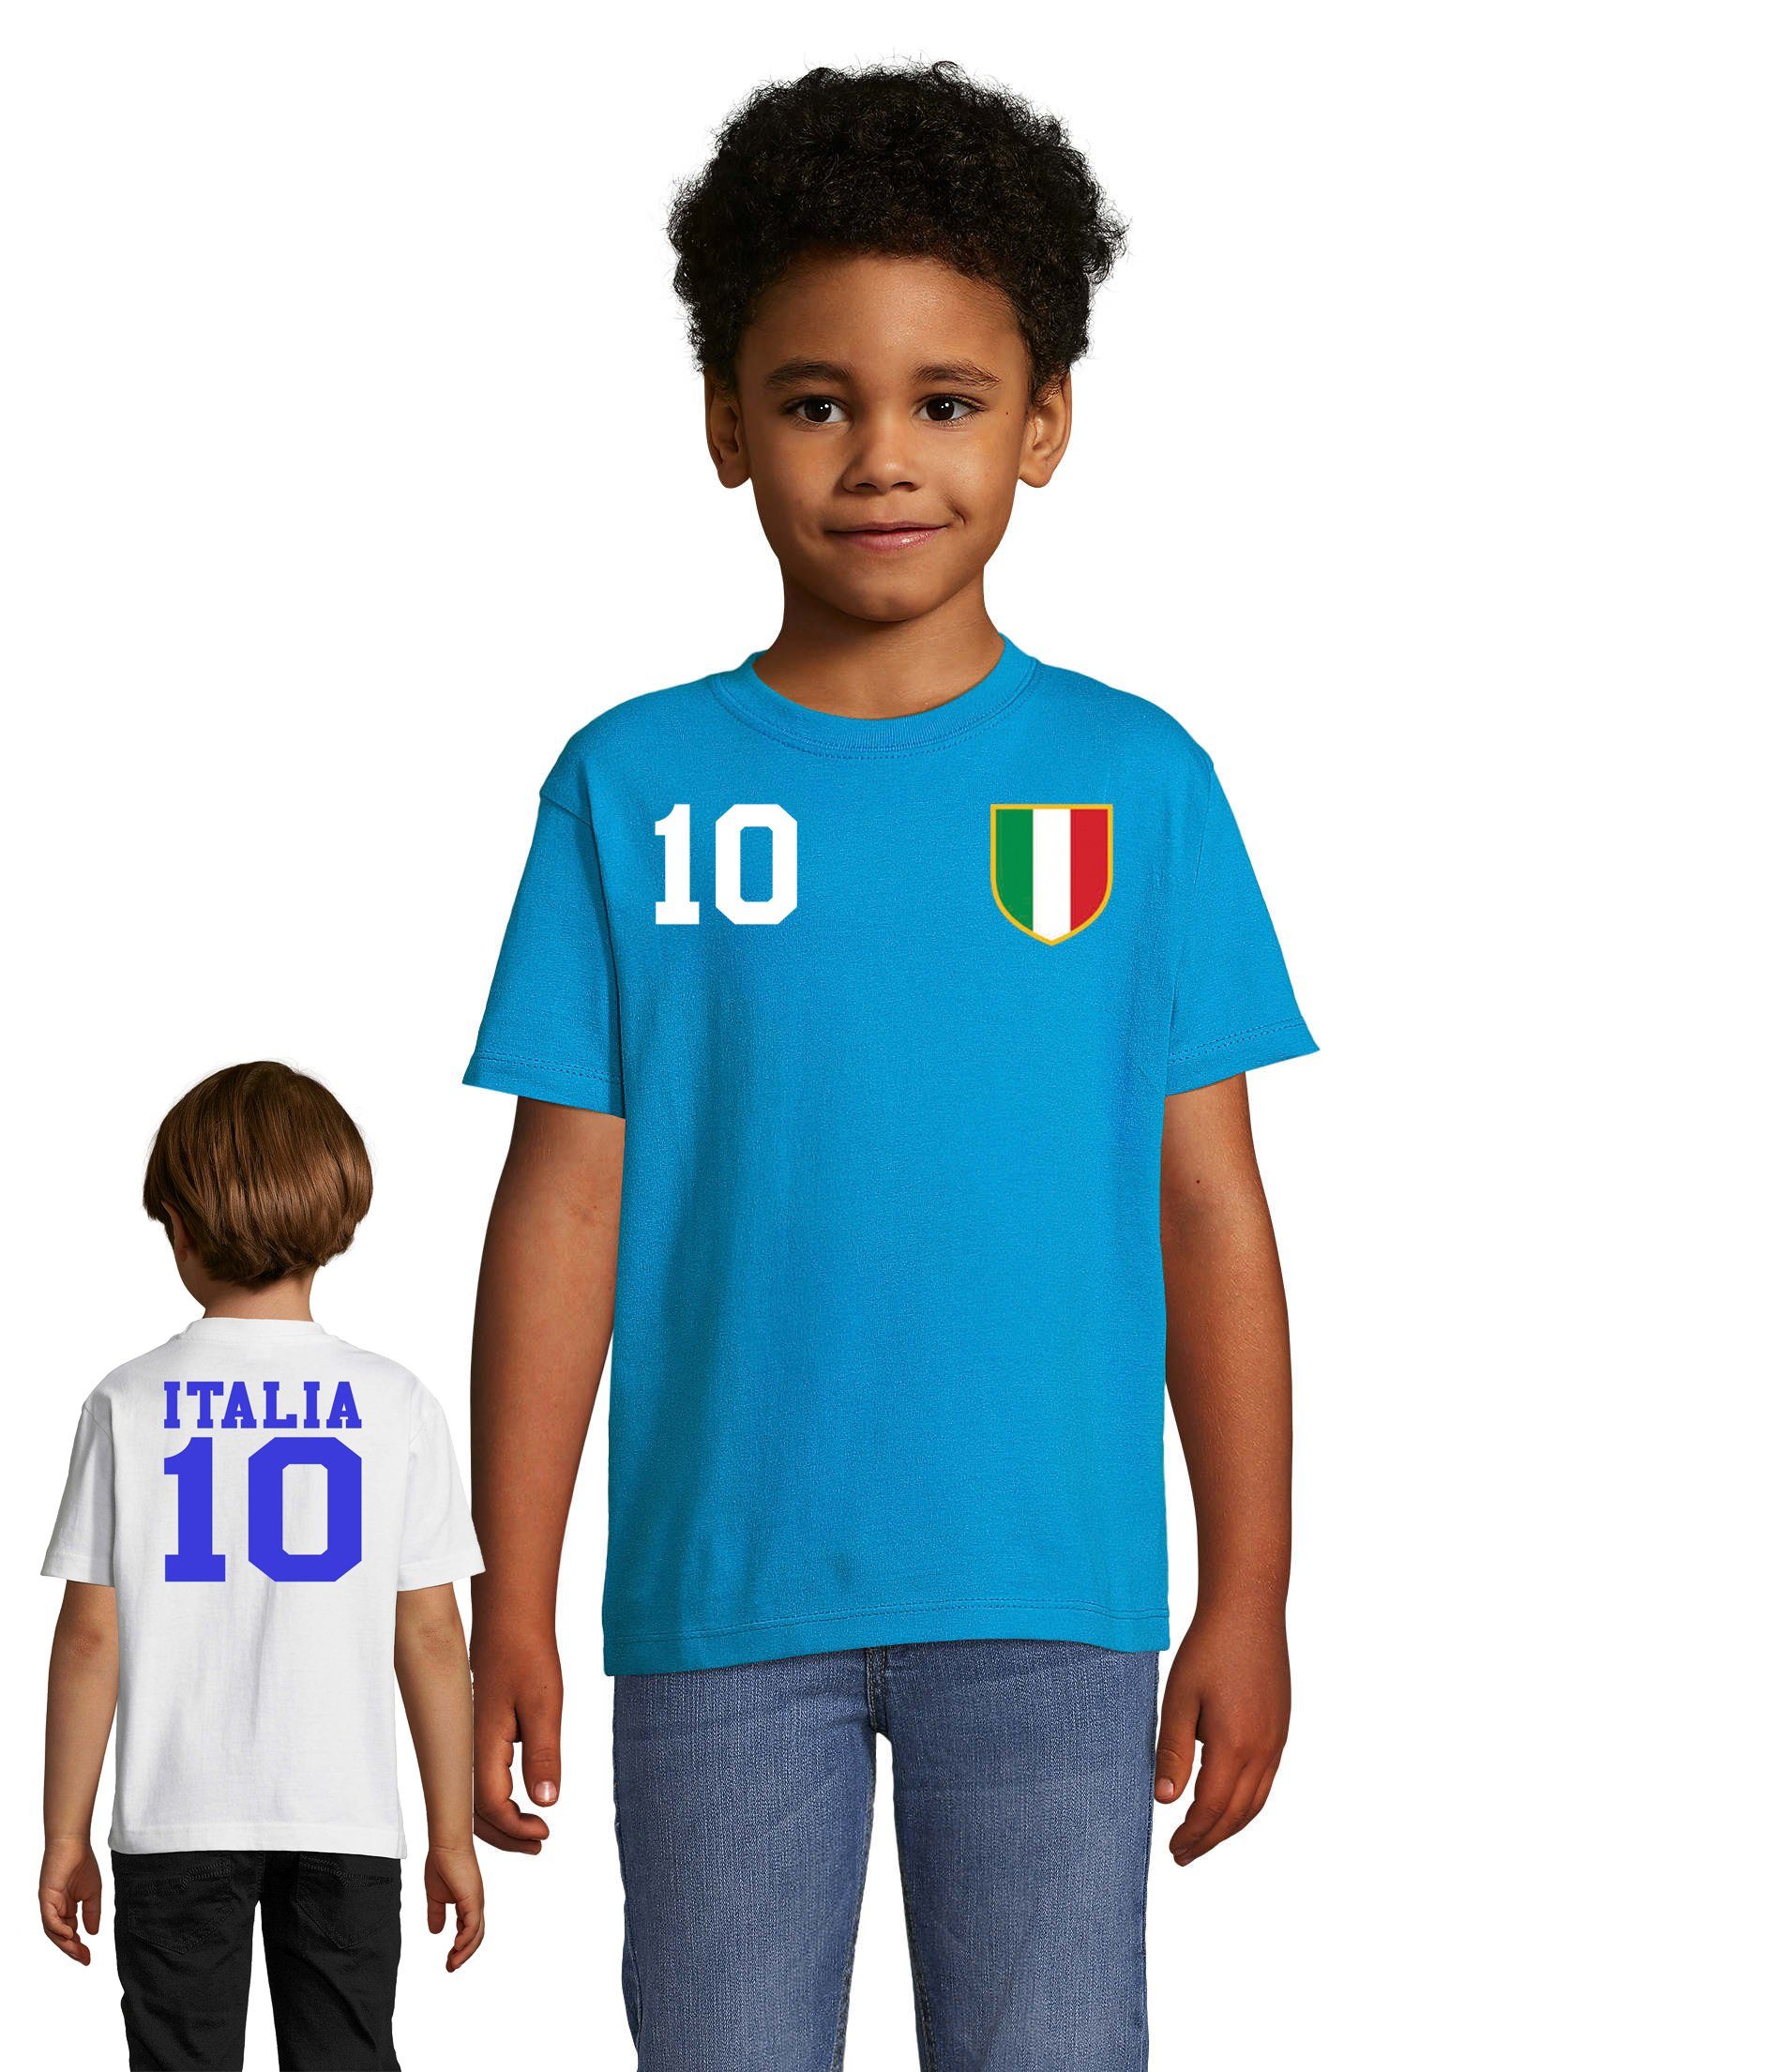 Blondie & Brownie T-Shirt Kinder Italien Sport Trikot Fußball Meister WM Europa EM Weiss/Blau